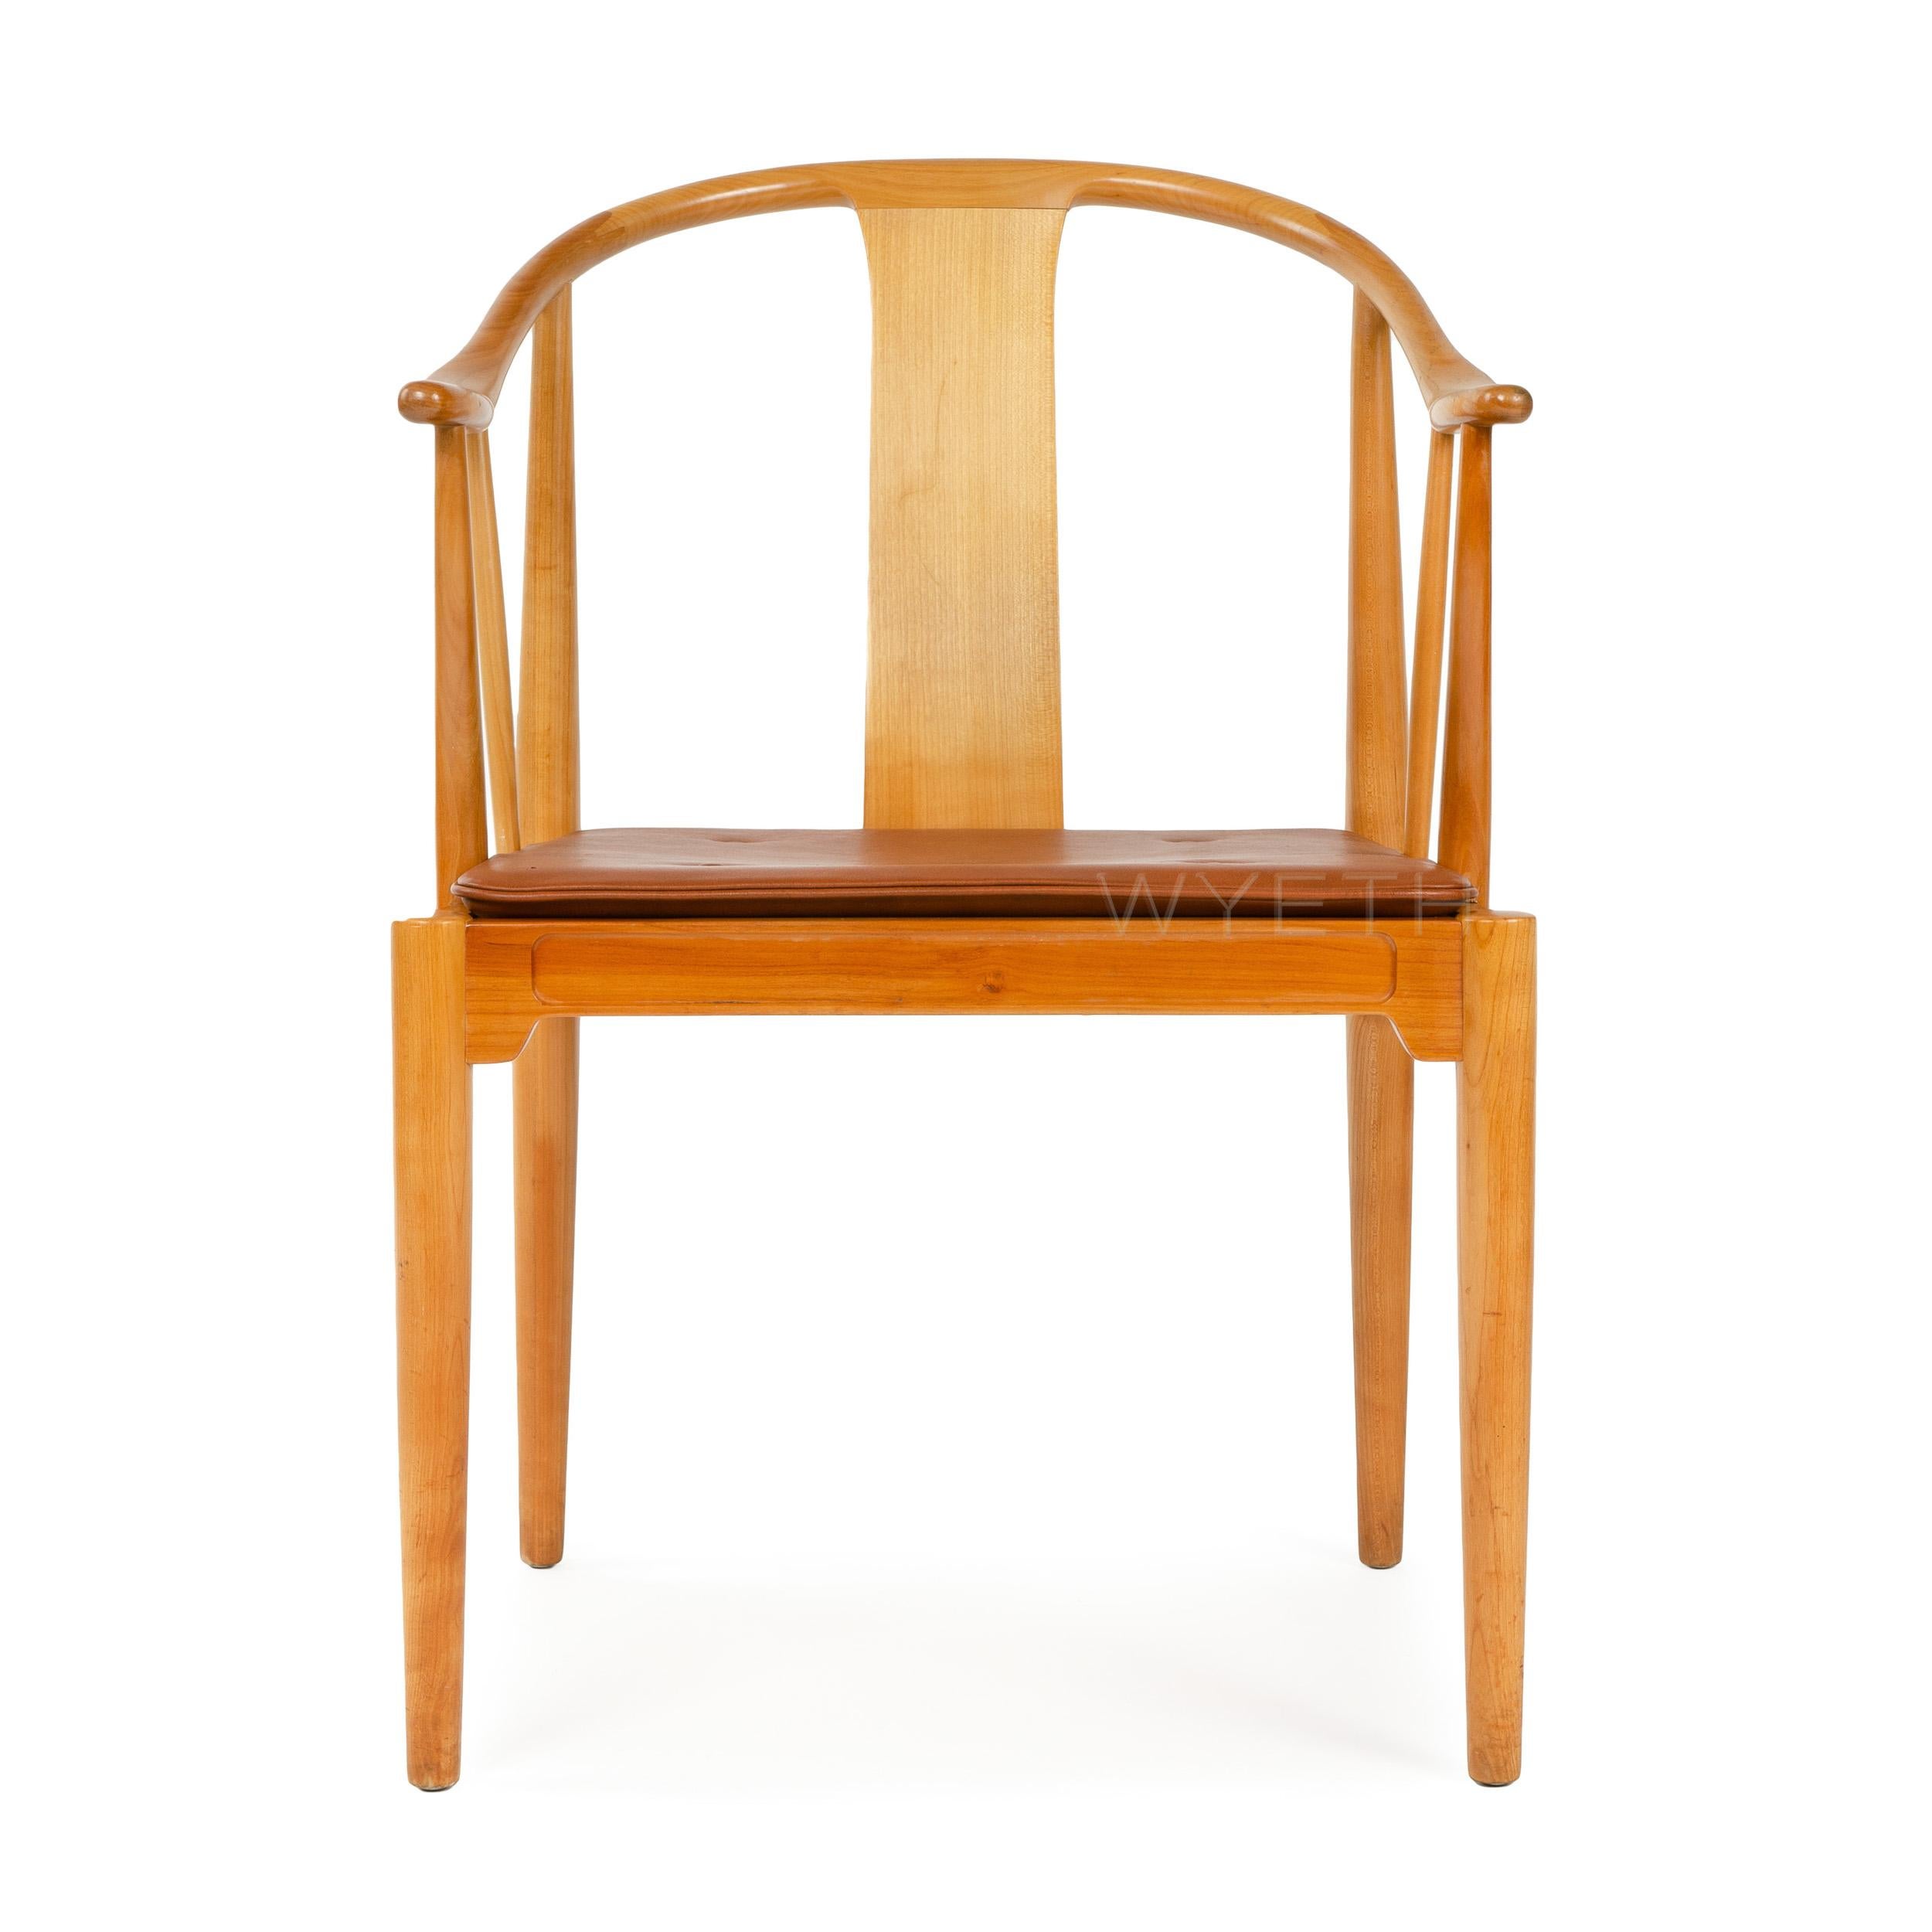 La chaise chinoise conçue par Hans Wegner, fabriquée par Fritz Hansen. Structure en bois de cerisier avec un design sinueux du dossier et des bras et un coussin de siège en cuir naturel. Conçu en 1943, fabriqué dans les années 1950 au Danemark.